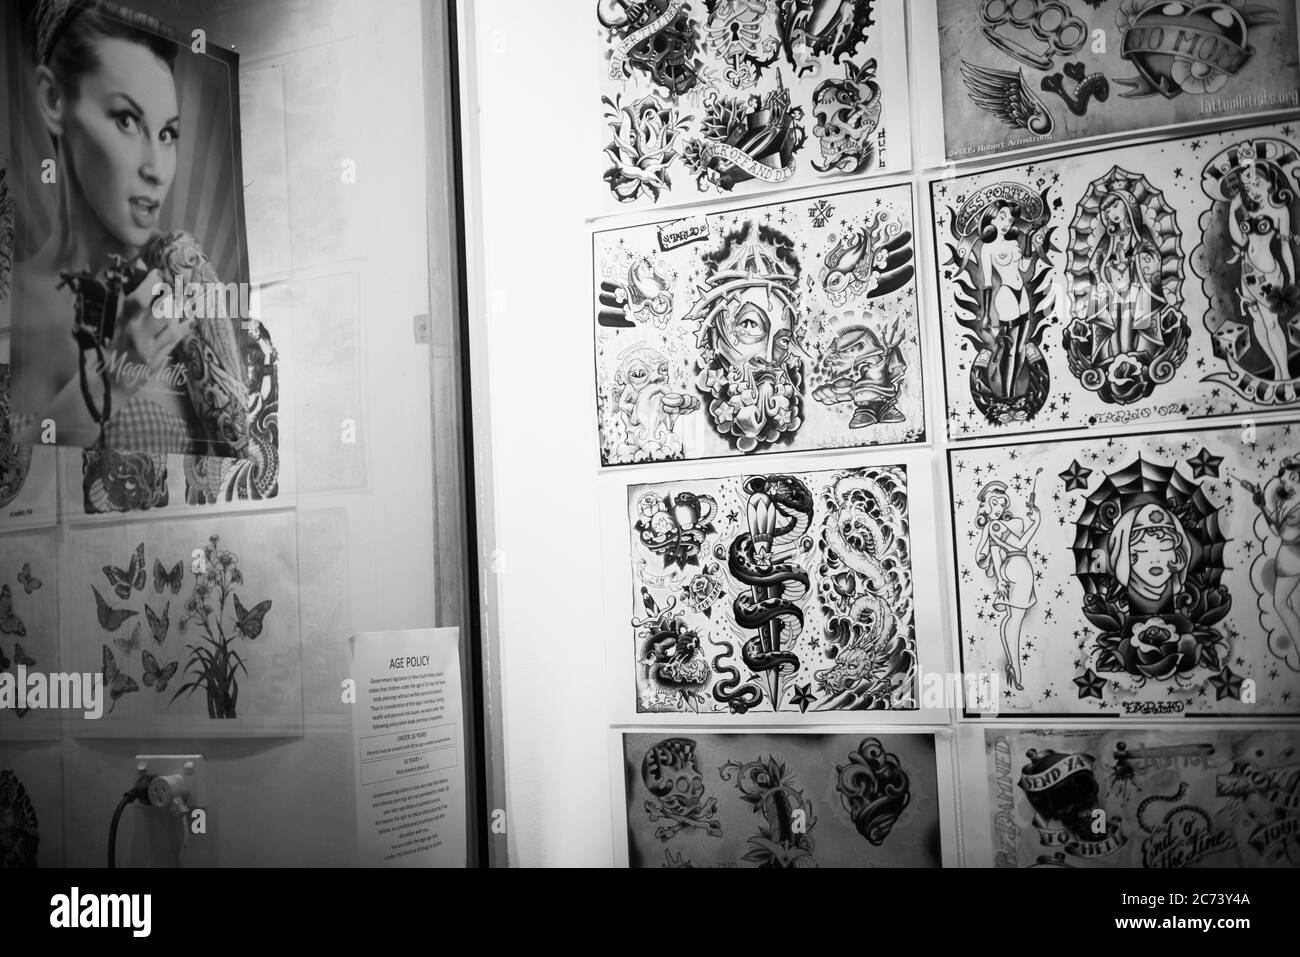 Lo que pasa en Tattoo World, una sala de tatuajes en Sydney Australia. Foto de stock